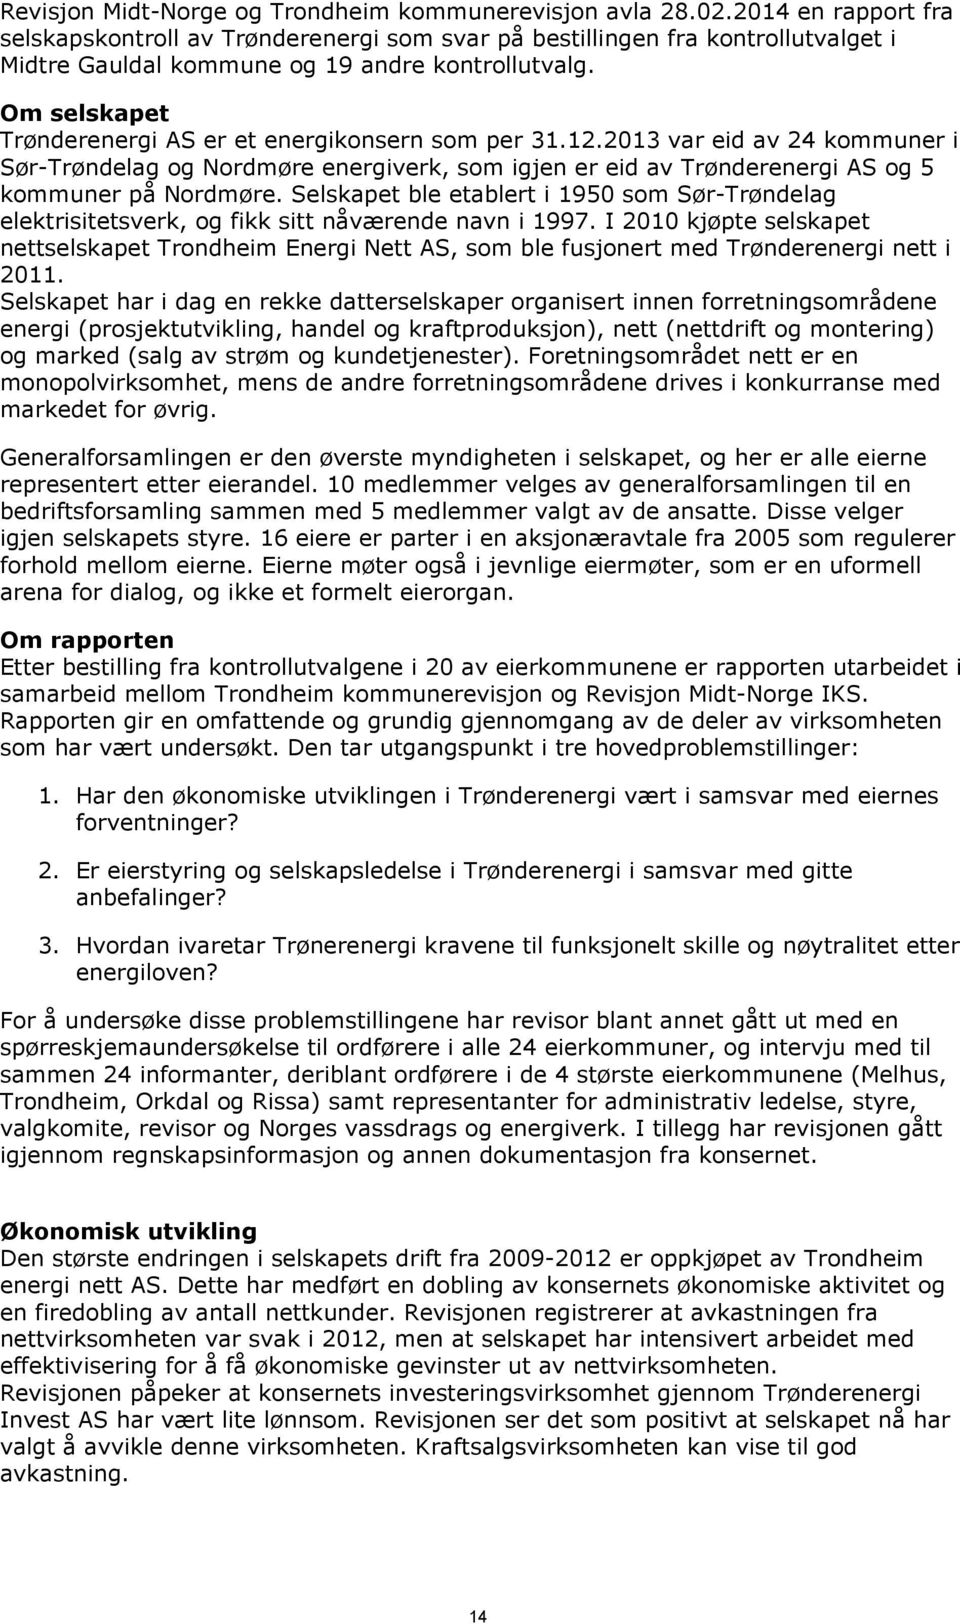 Om selskapet Trønderenergi AS er et energikonsern som per 31.12.2013 var eid av 24 kommuner i Sør-Trøndelag og Nordmøre energiverk, som igjen er eid av Trønderenergi AS og 5 kommuner på Nordmøre.